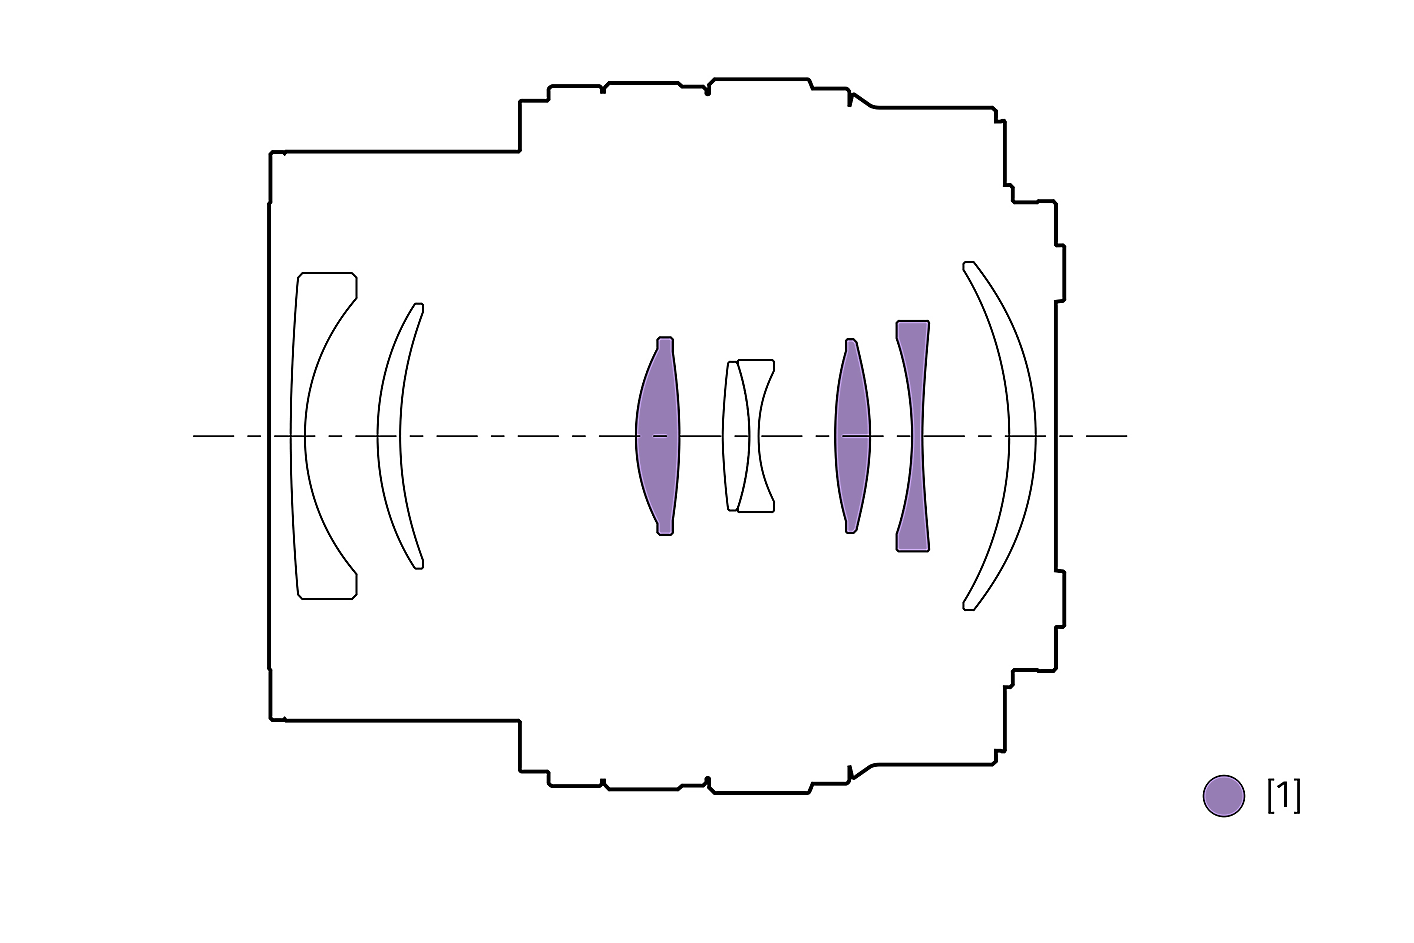 Ilustracija konfiguracije objektiva